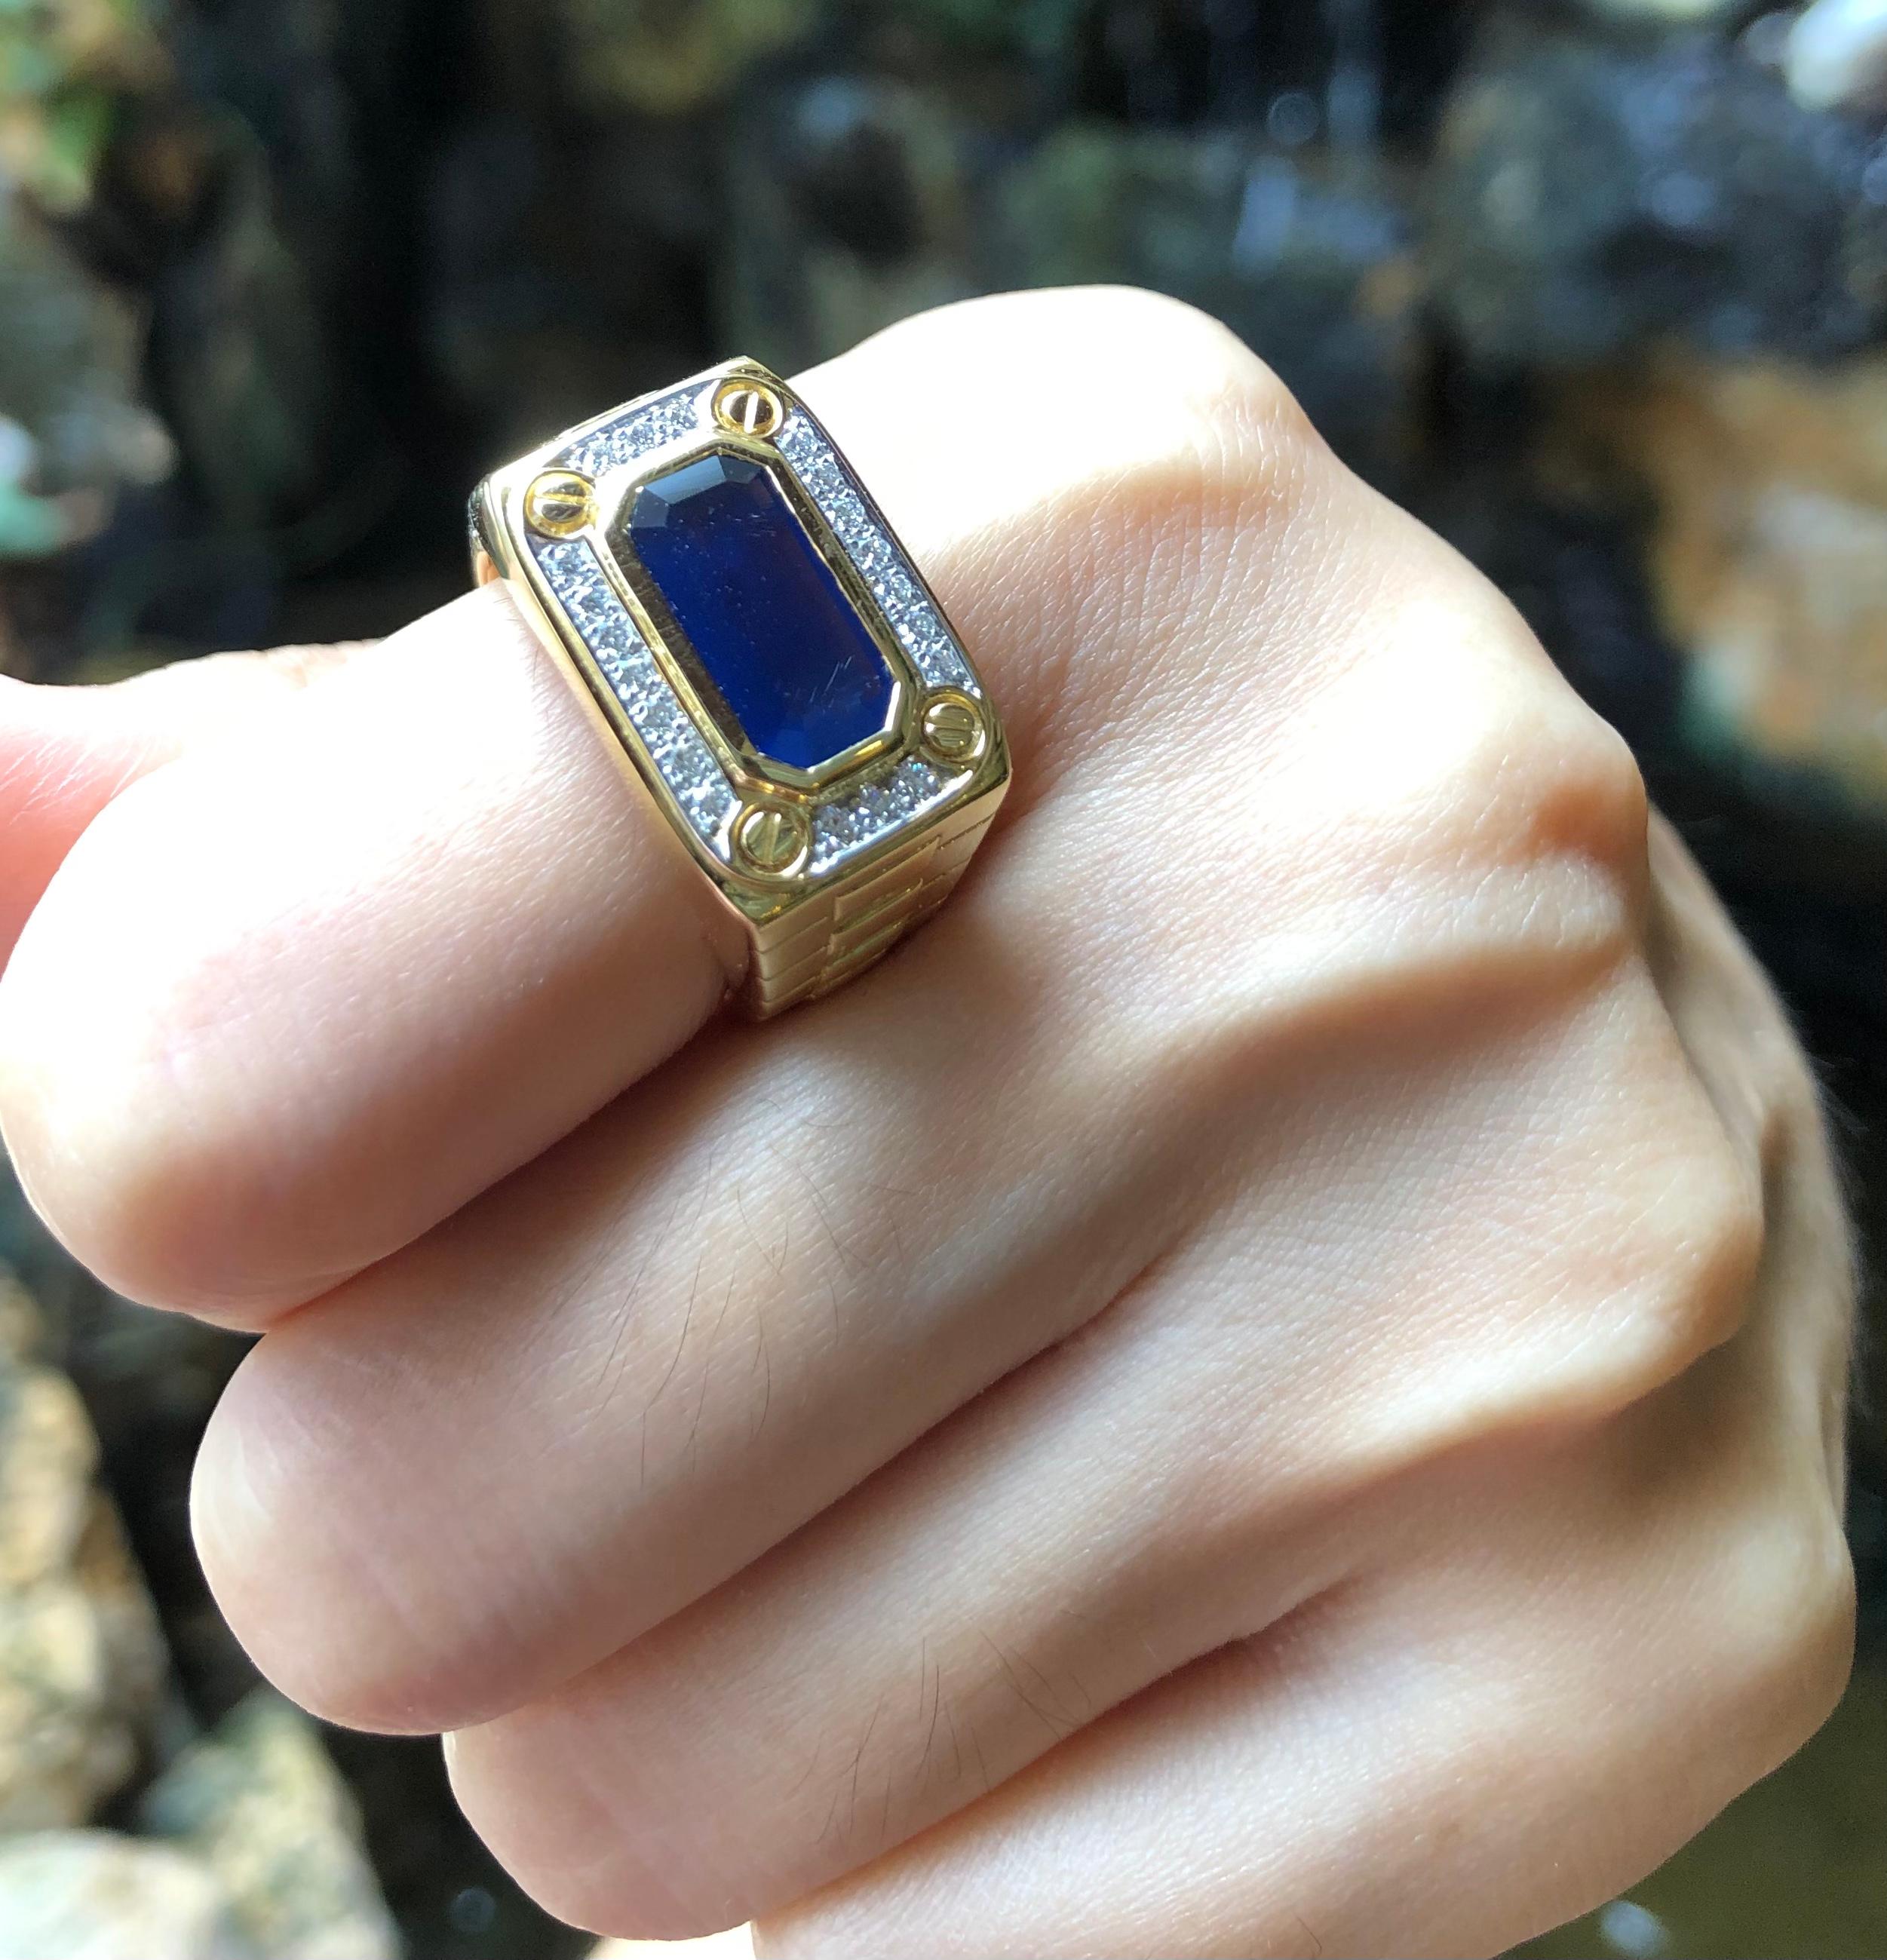 Blauer Saphir 2,26 Karat mit Diamant 0,21 Karat Ring in 18 Karat Goldfassung

Breite:  2,0 cm 
Länge: 1,3 cm
Ringgröße: 58
Gesamtgewicht: 18,11 Gramm

